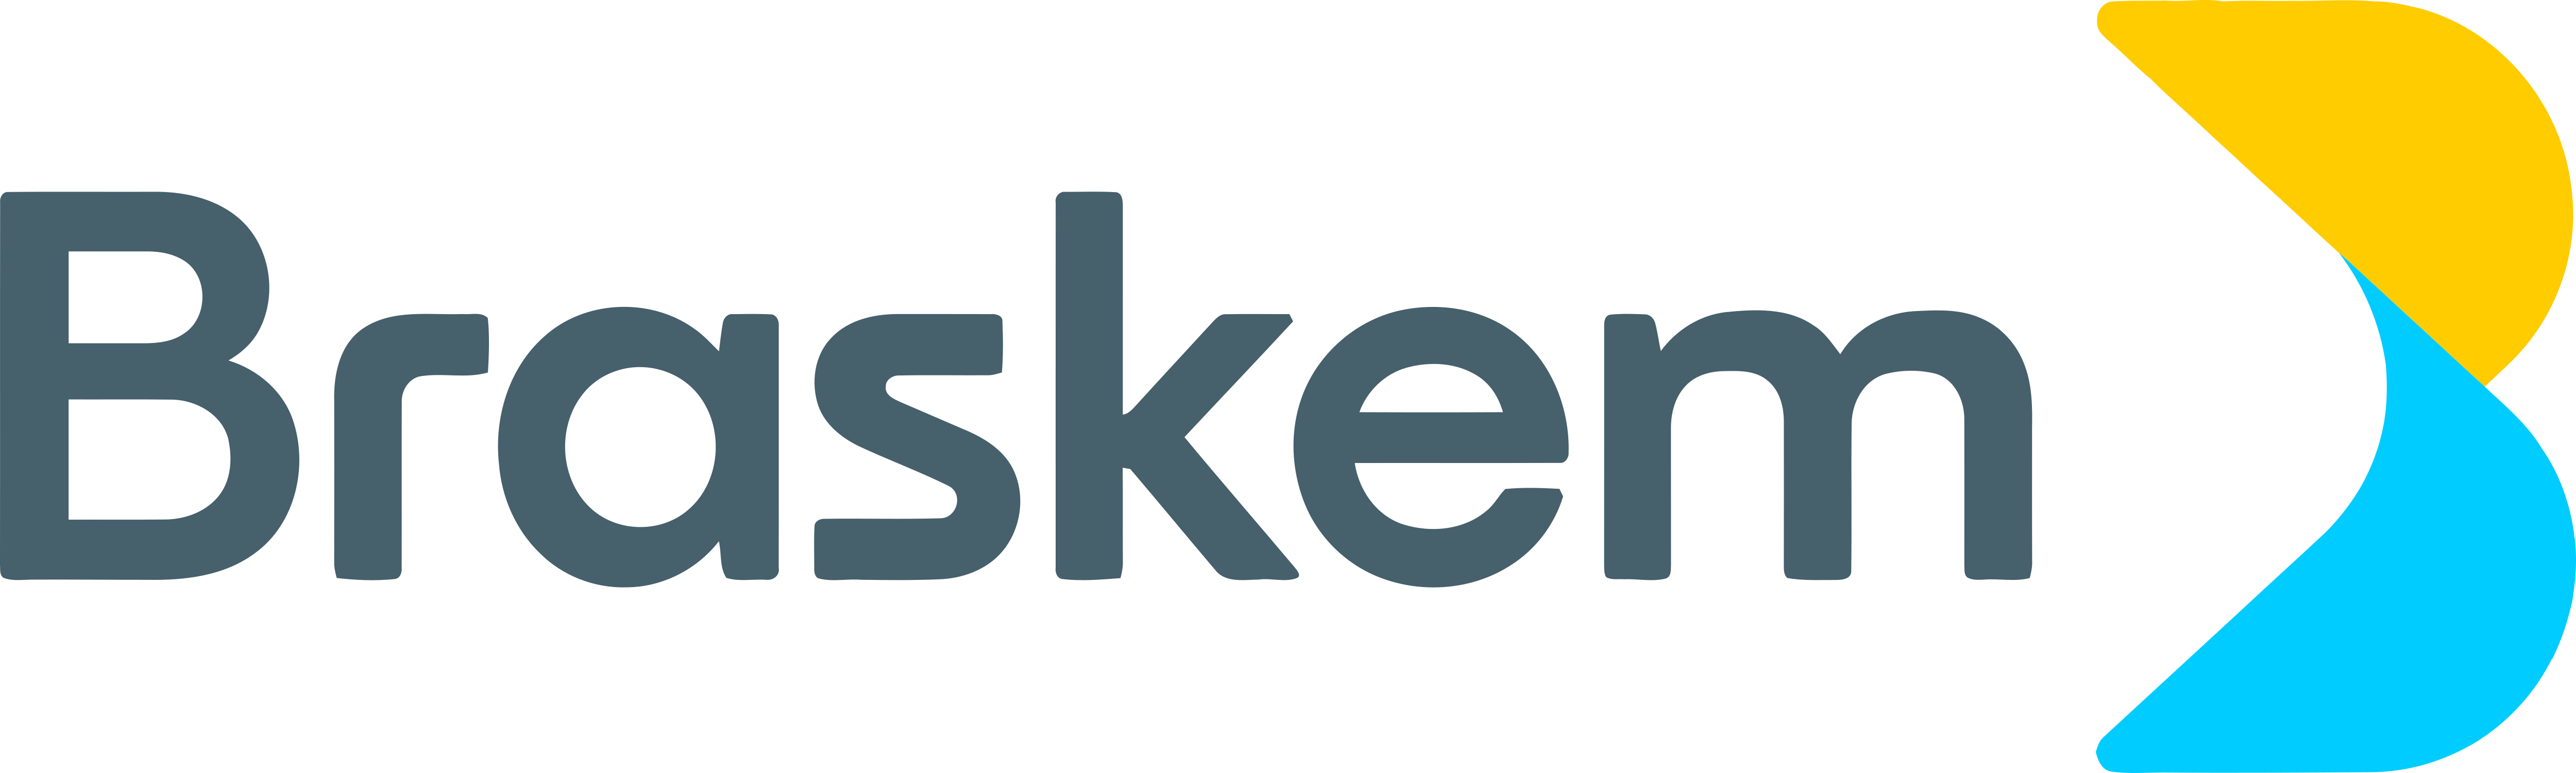 Braskem – Logos Download